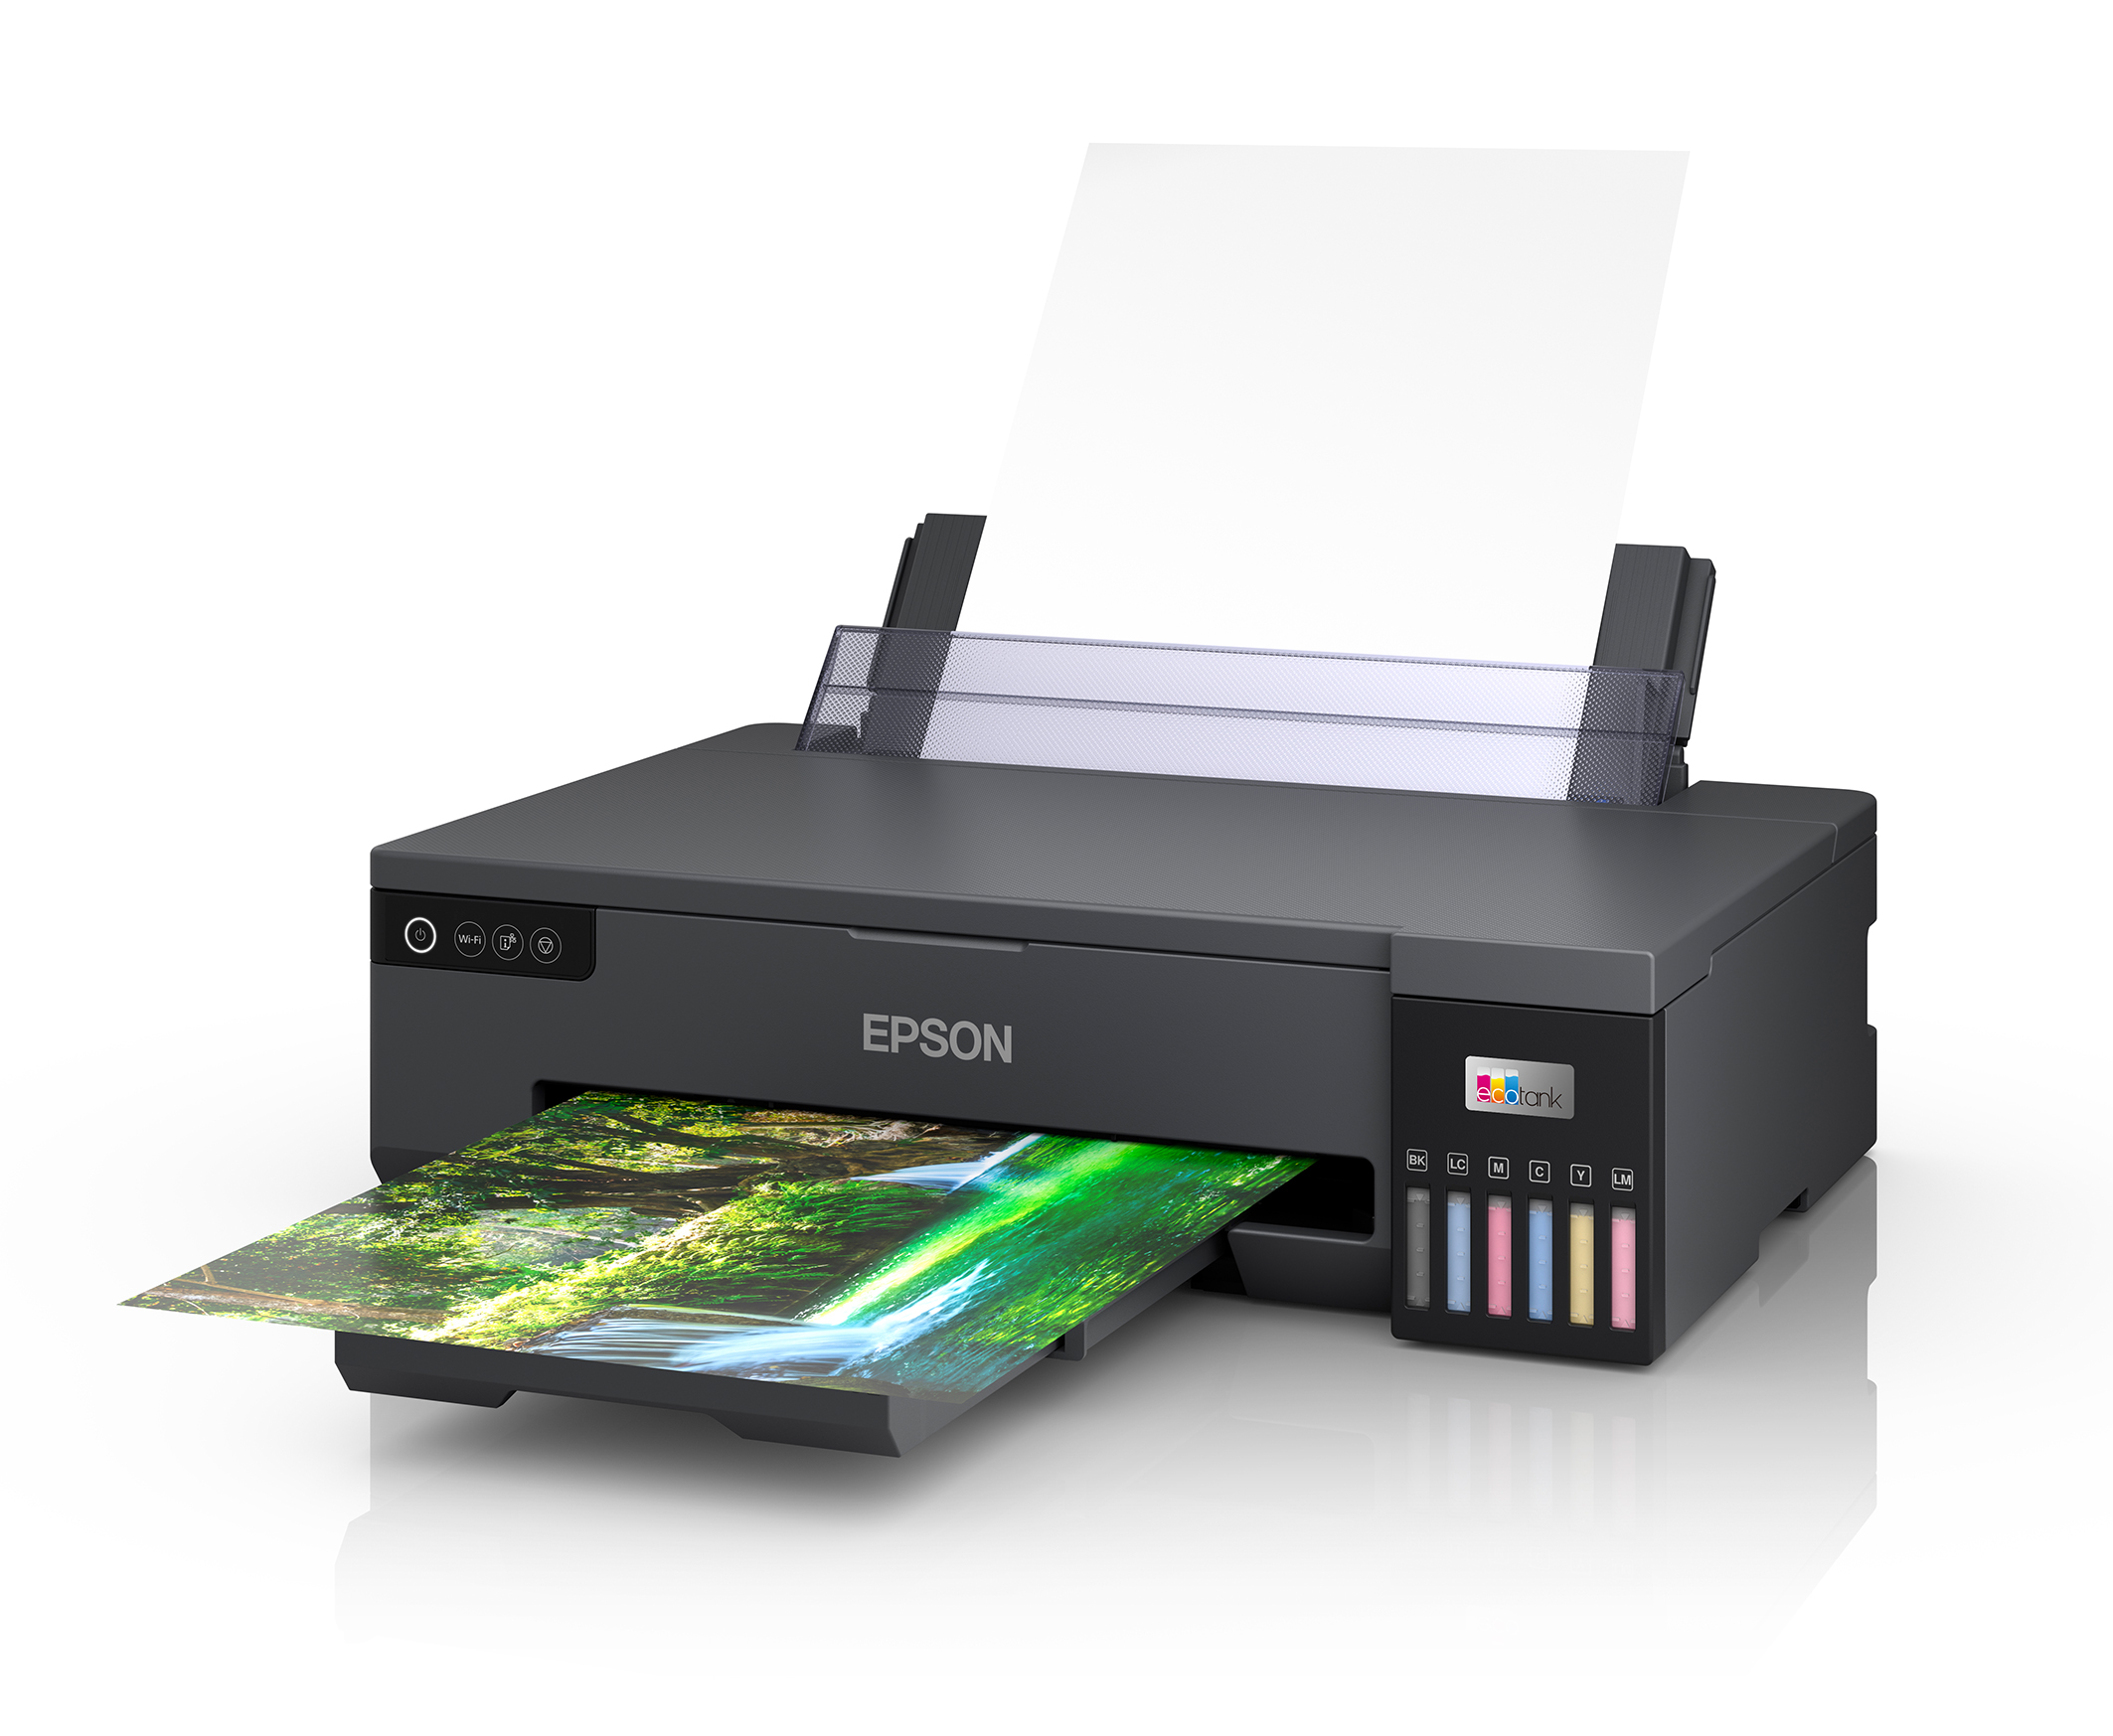 Neuer Epson EcoTank Drucker für Fotos im A3+ Format - Das FotoPortal | Drucker & Multifunktionsdrucker